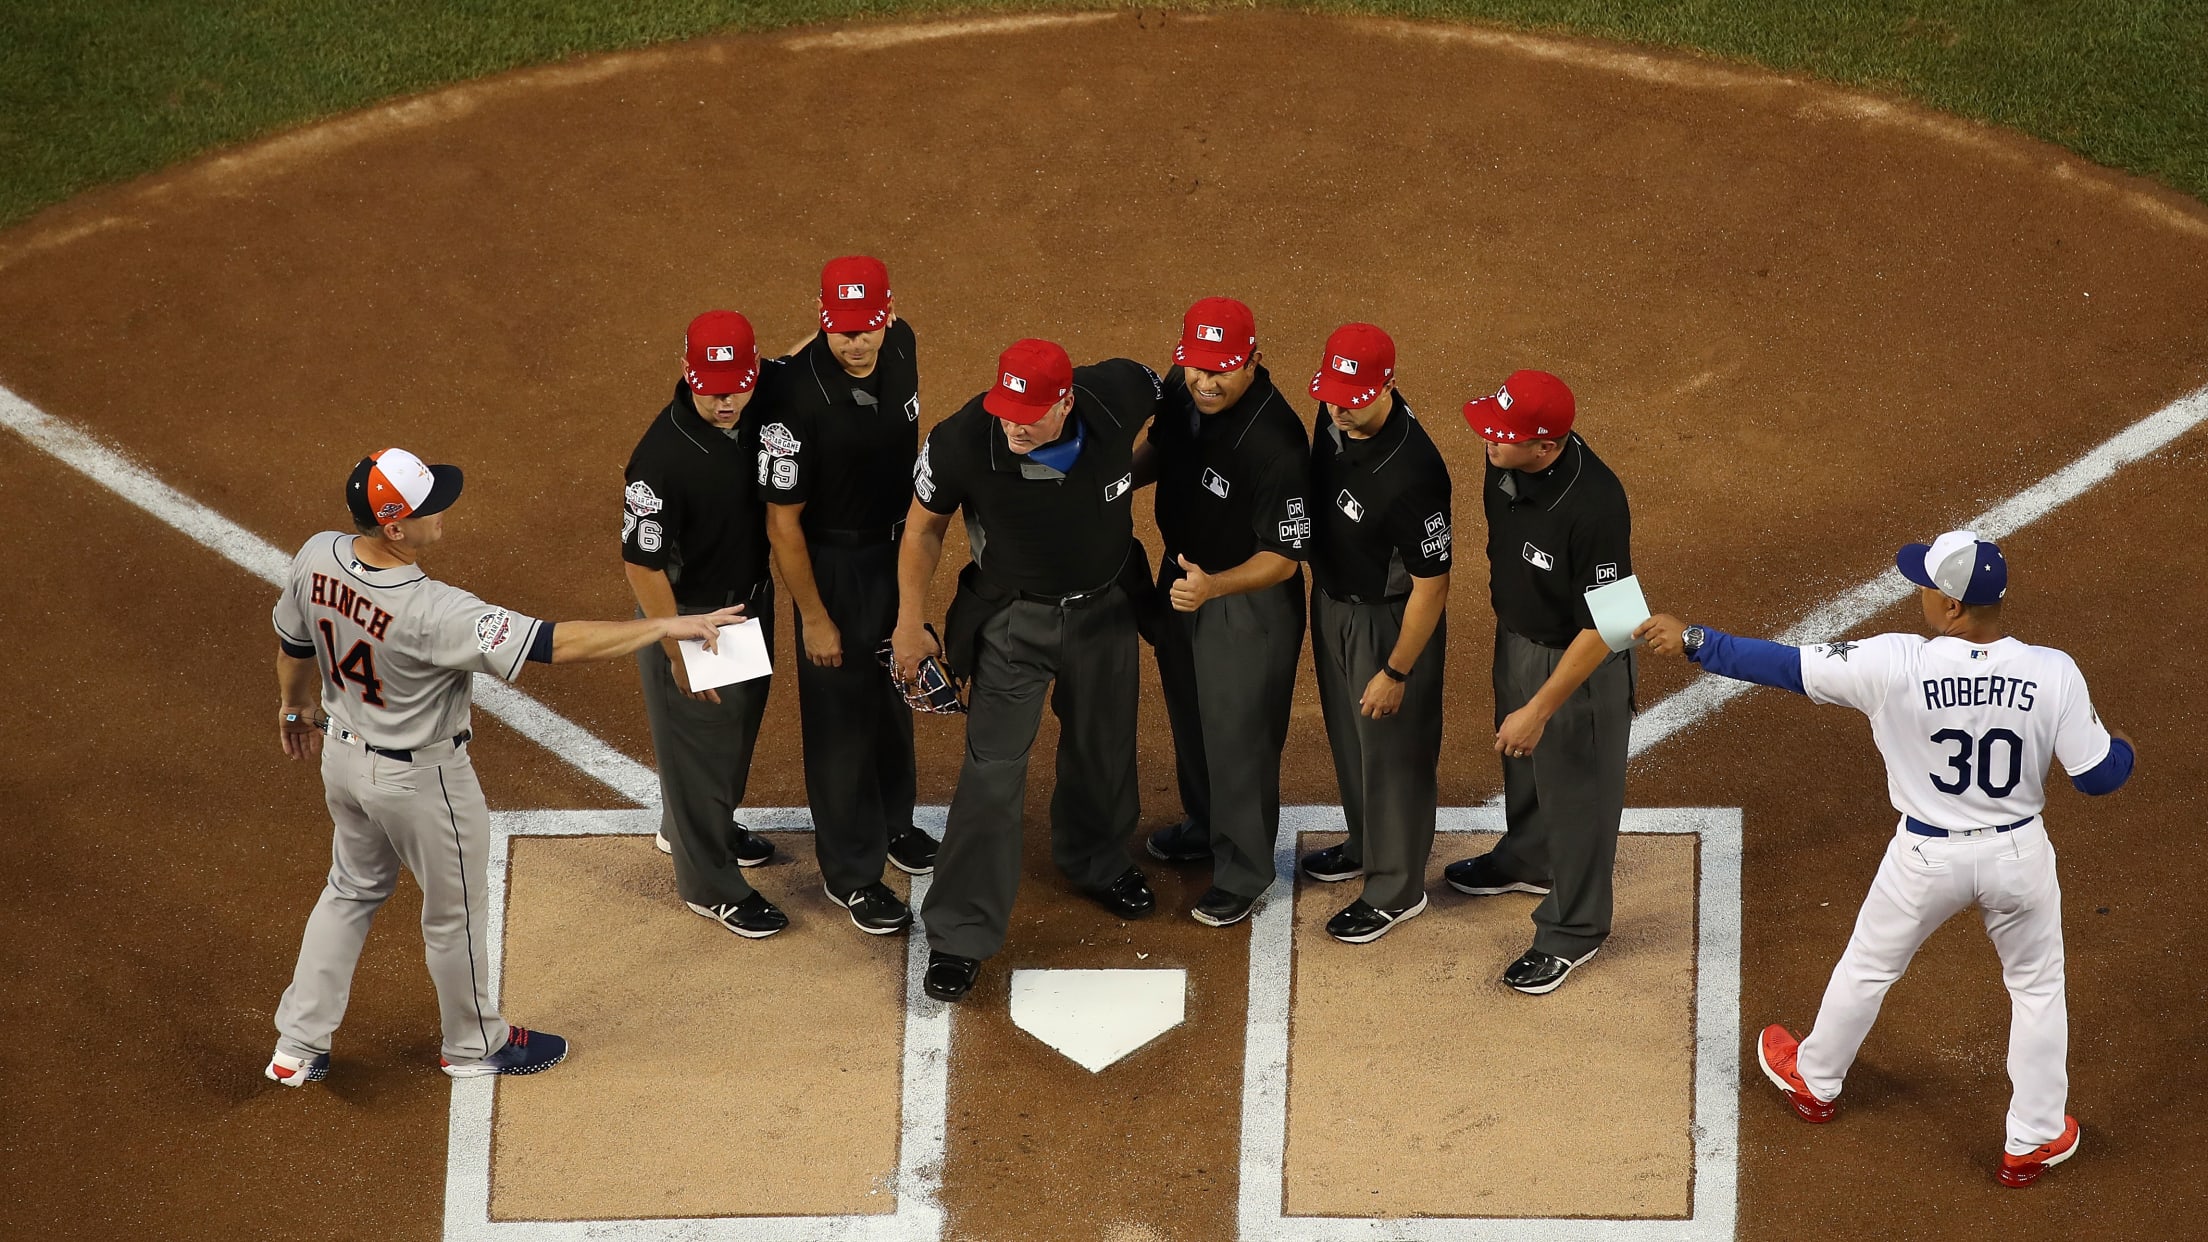 MLB, Official Information, Umpires